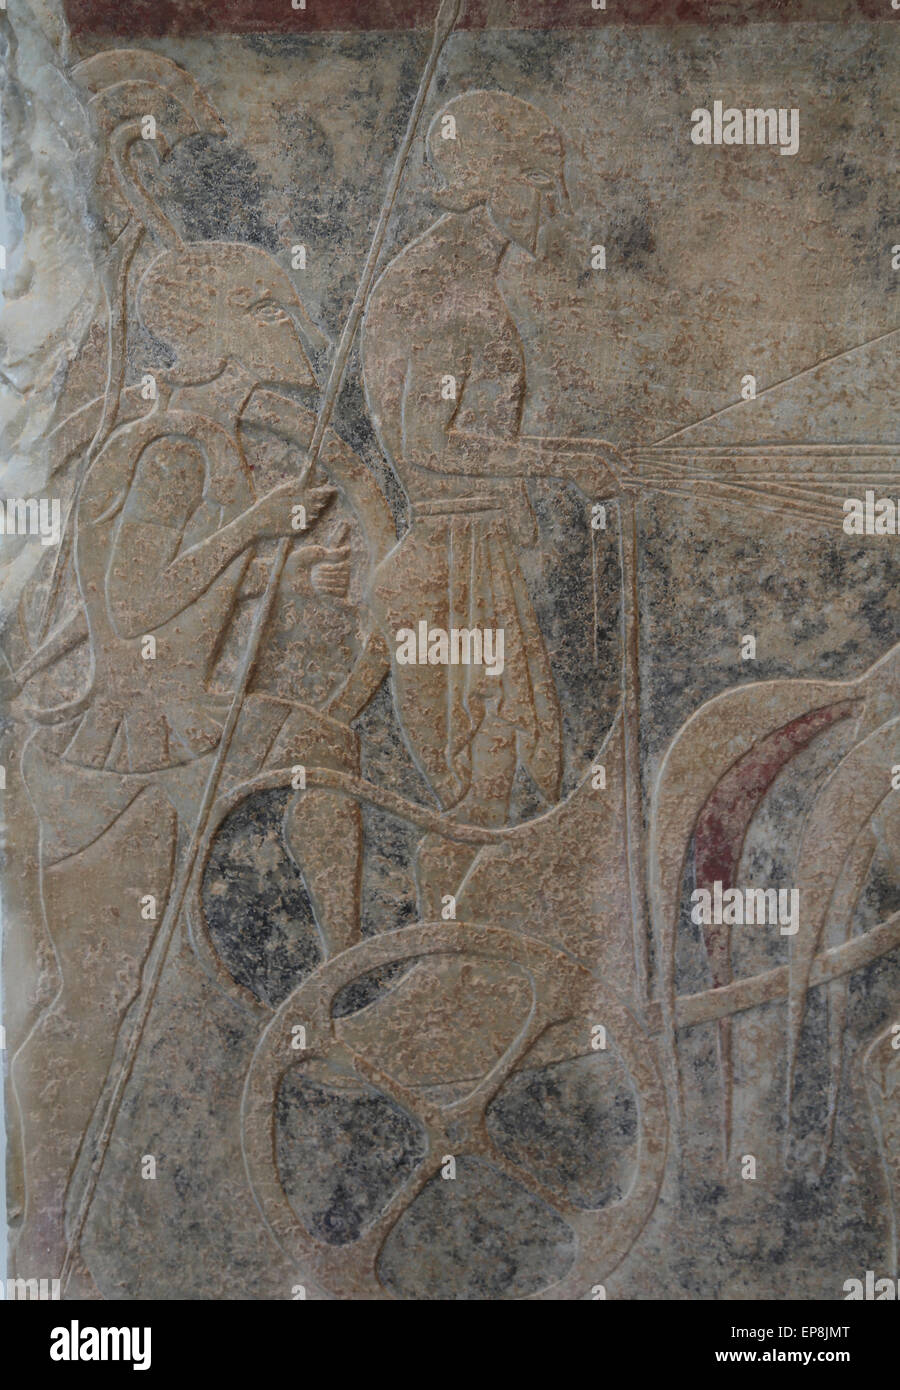 Frammento della stele di marmo (grave marker) di un oplita (piede soldato). Greco, soffitta, ca. 525-515 A.C. Foto Stock